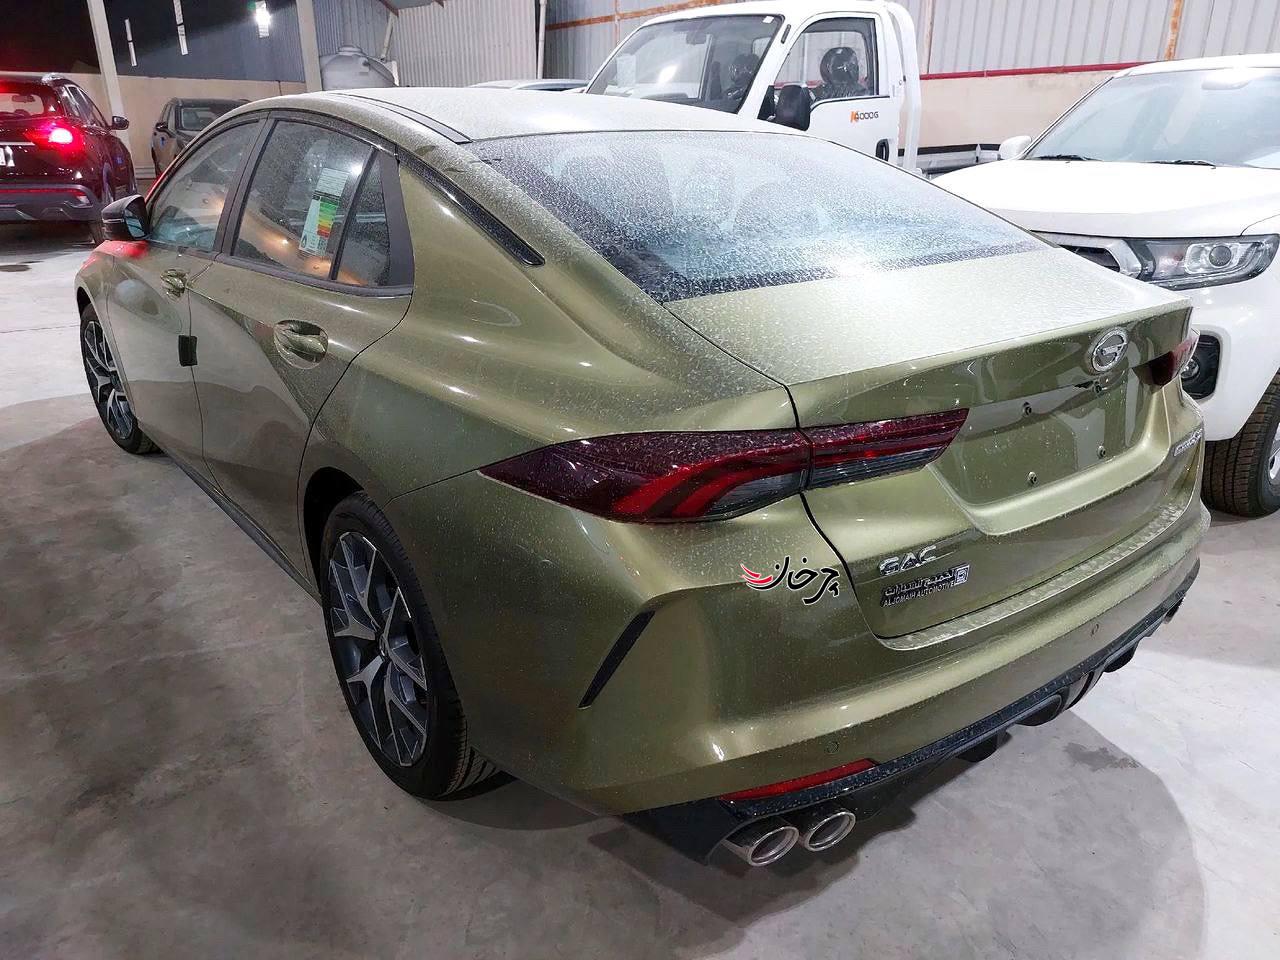 گک امپاو - GAC EMPOW خودرو وارداتی جدید بازار ایران